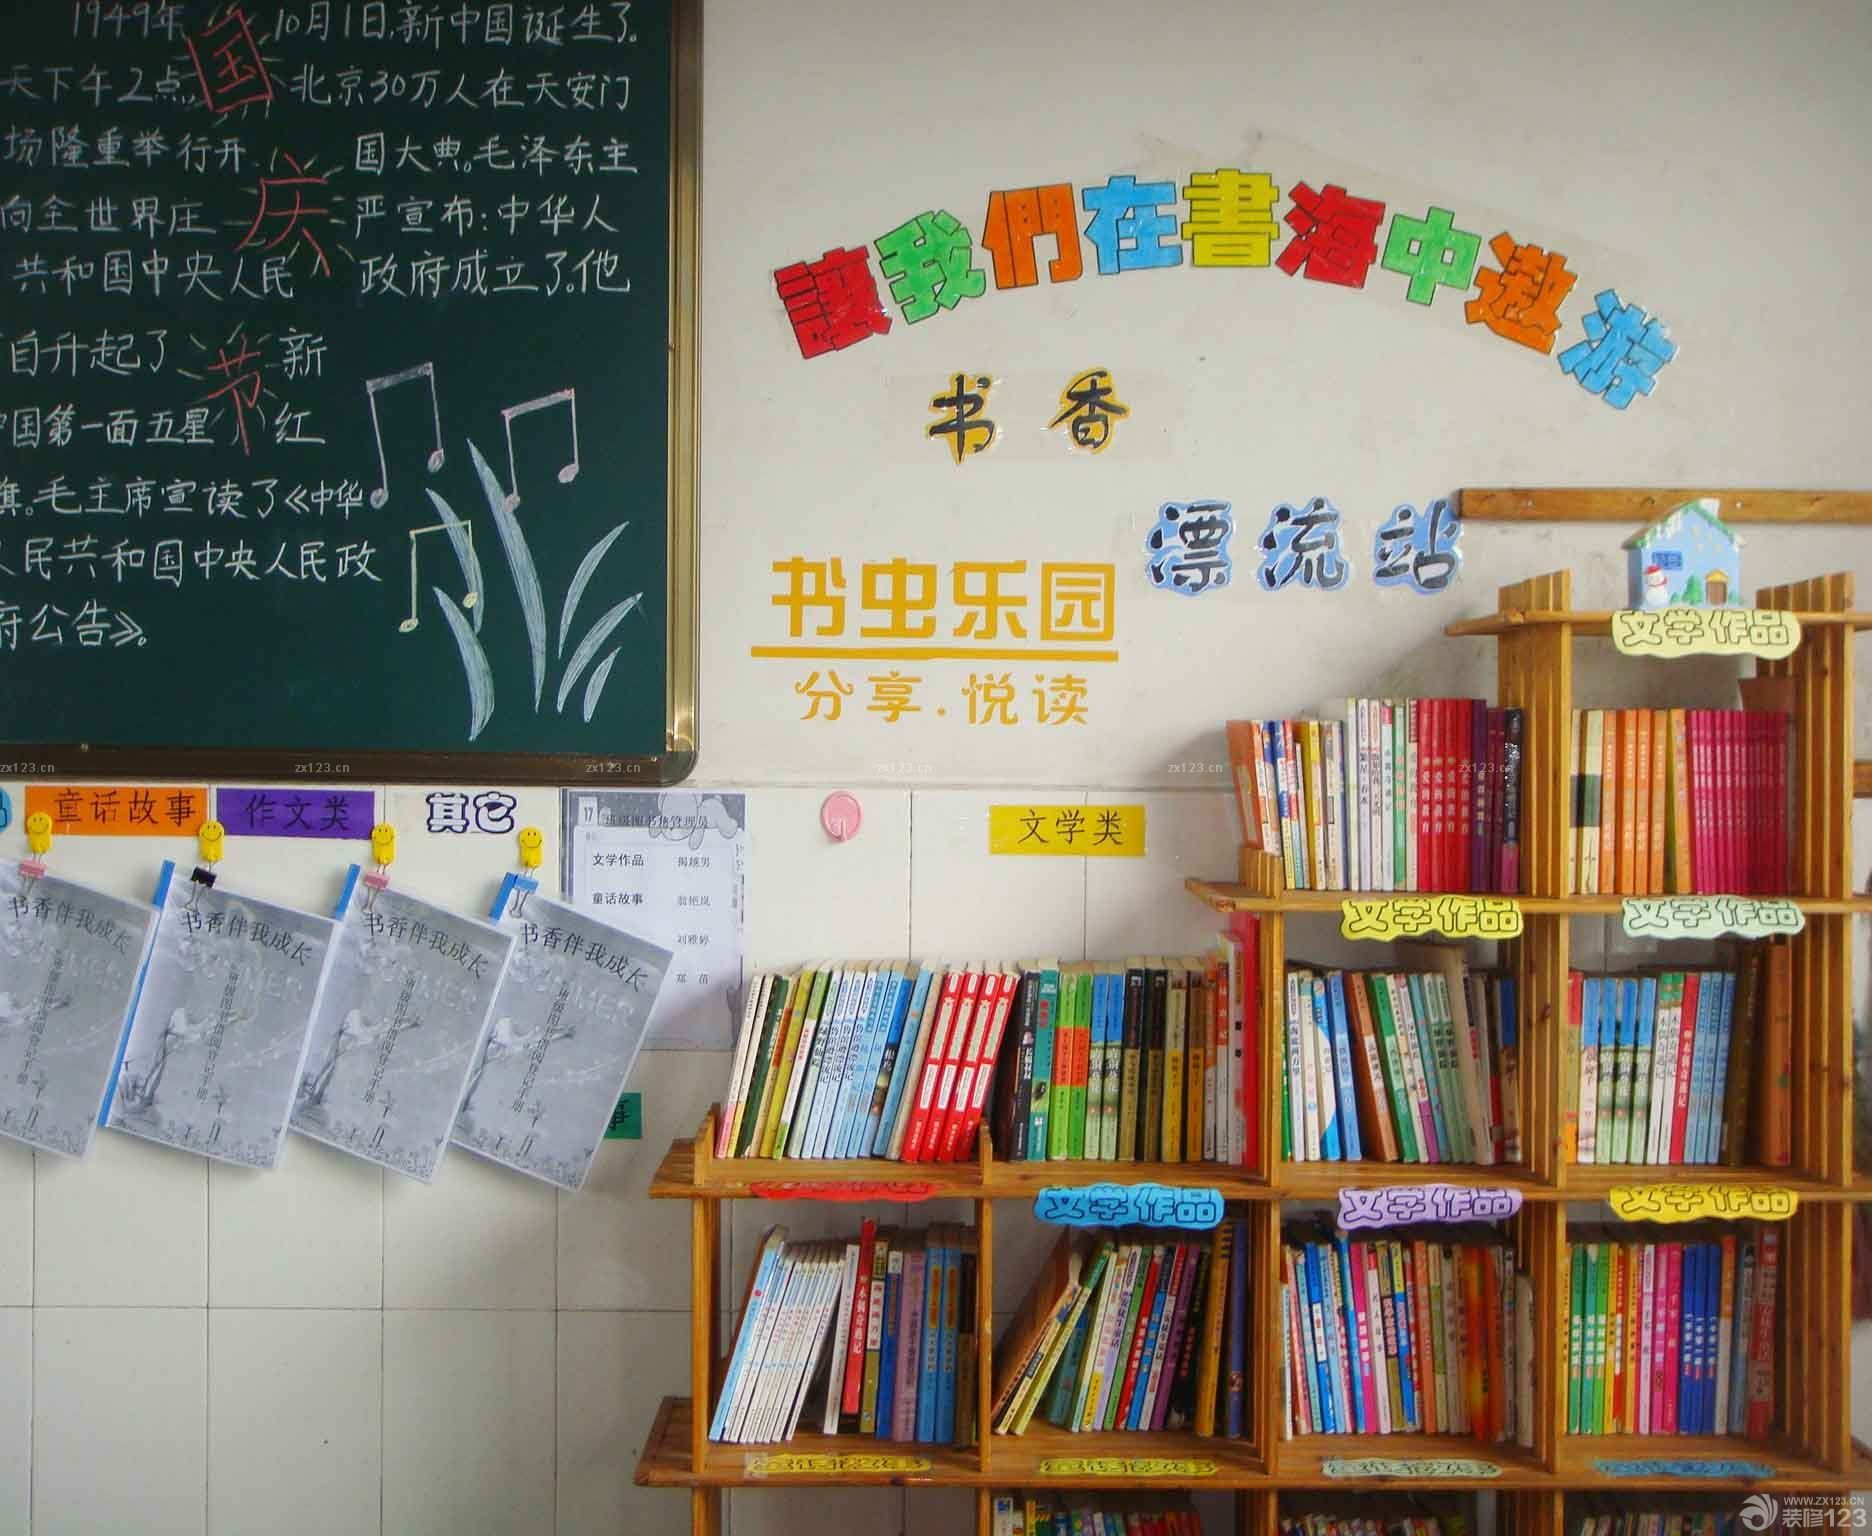 北京幼儿园室内书架装修效果图片